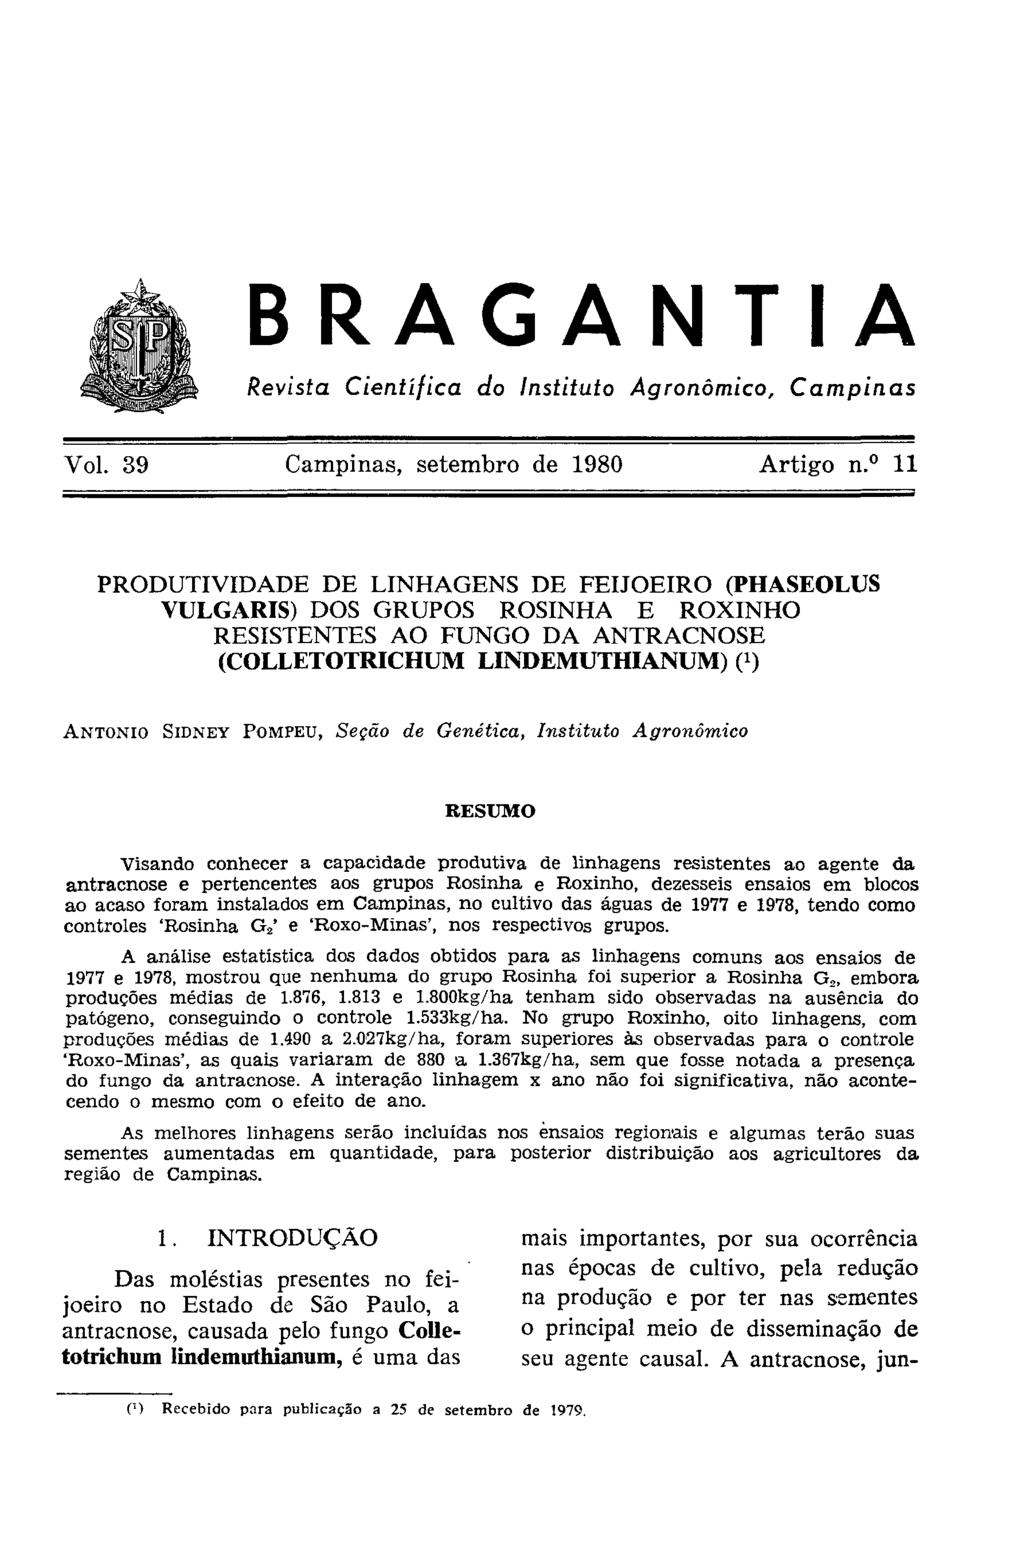 PRODUTIVIDADE DE LINHAGENS DE FEIJOEIRO (PHASEOLUS VULGARIS) DOS GRUPOS ROSINHA E ROXINHO RESISTENTES AO FUNGO DA ANTRACNOSE (COLLETOTRICHUM LINDEMUTHIANUM) ( 1 ) ANTONIO SIDNEY POMFEU, Seção de